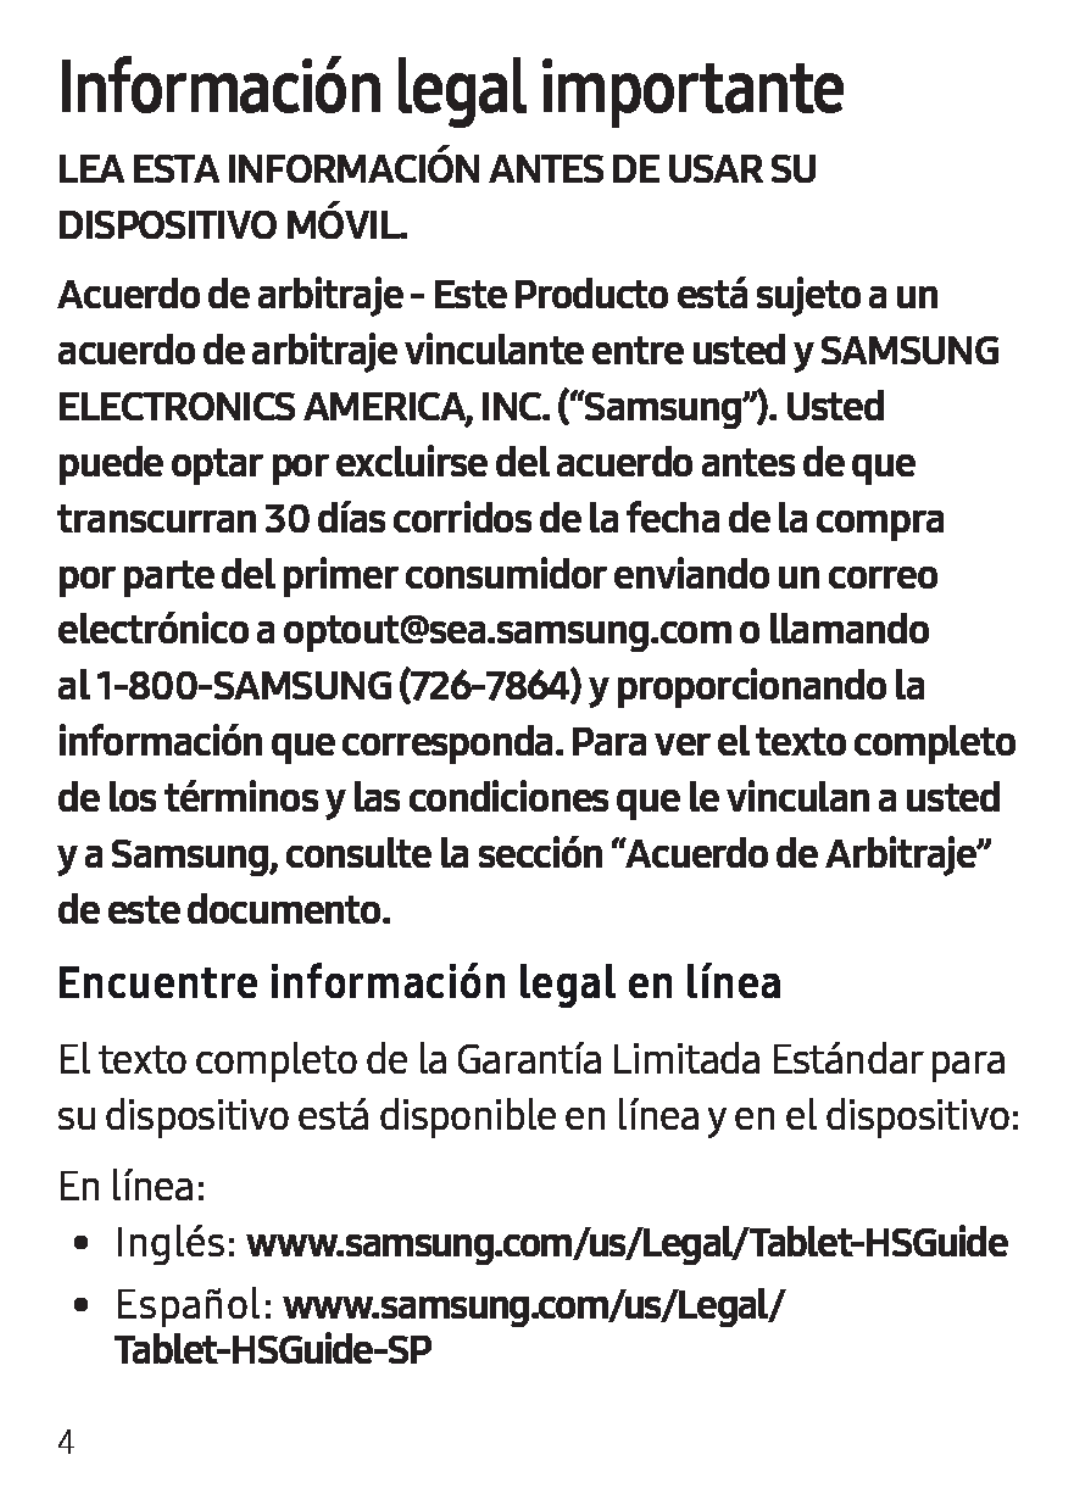 Encuentre información legal en línea Galaxy Tab E 8.0 T-Mobile